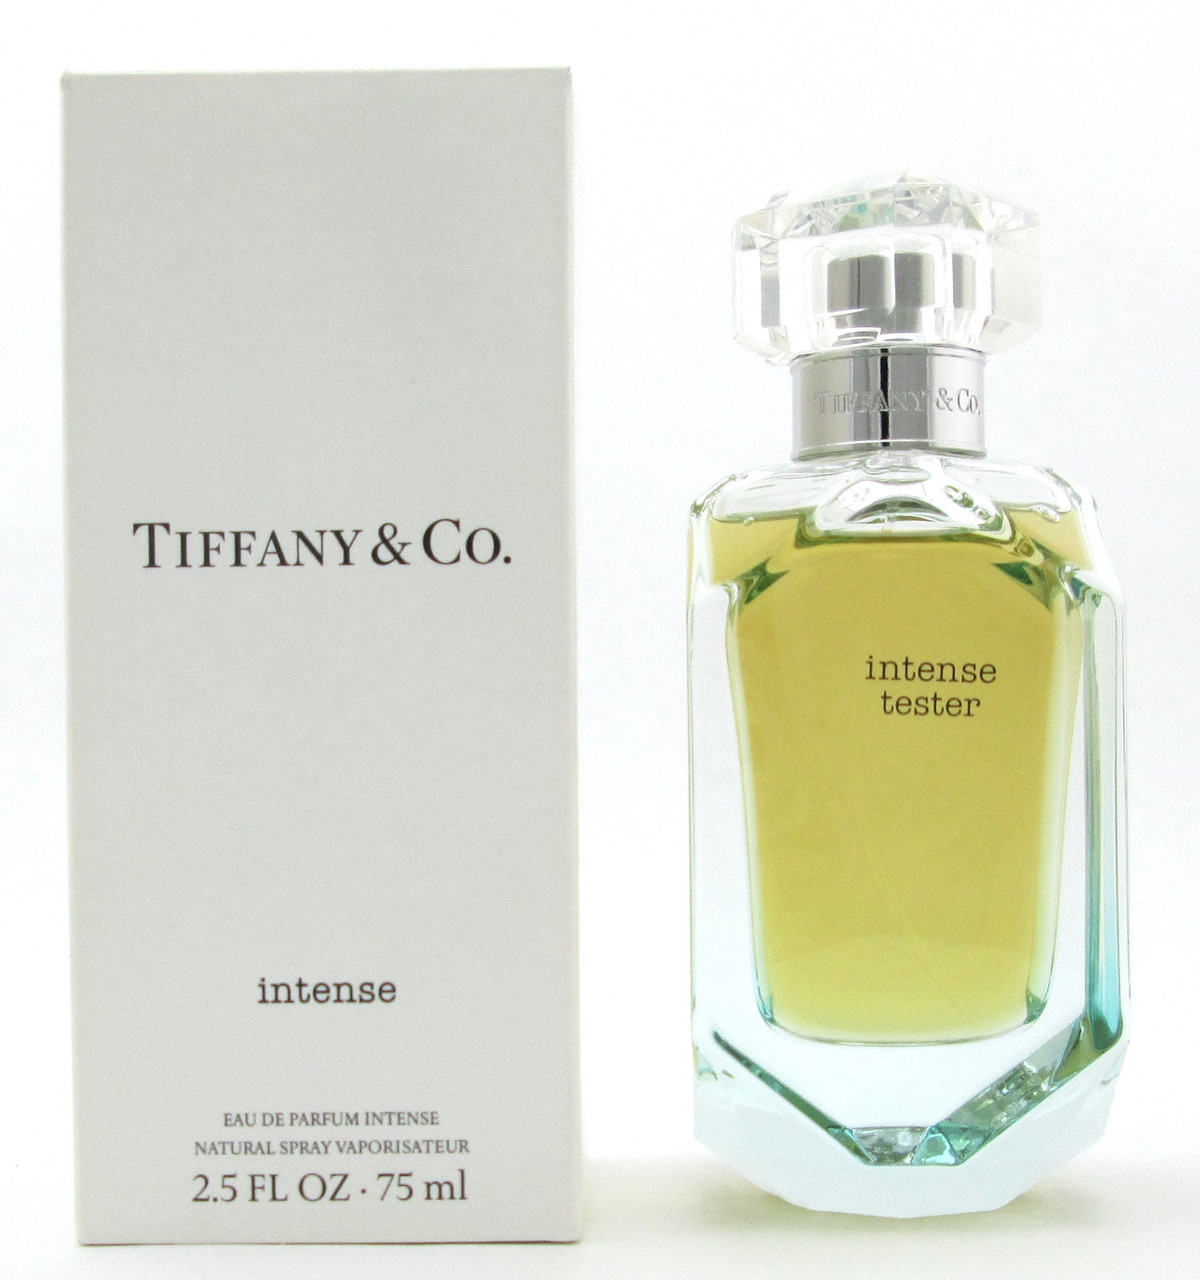 Tiffany & Co by Tiffany 2.5 oz Eau de Parfum Spray, Women